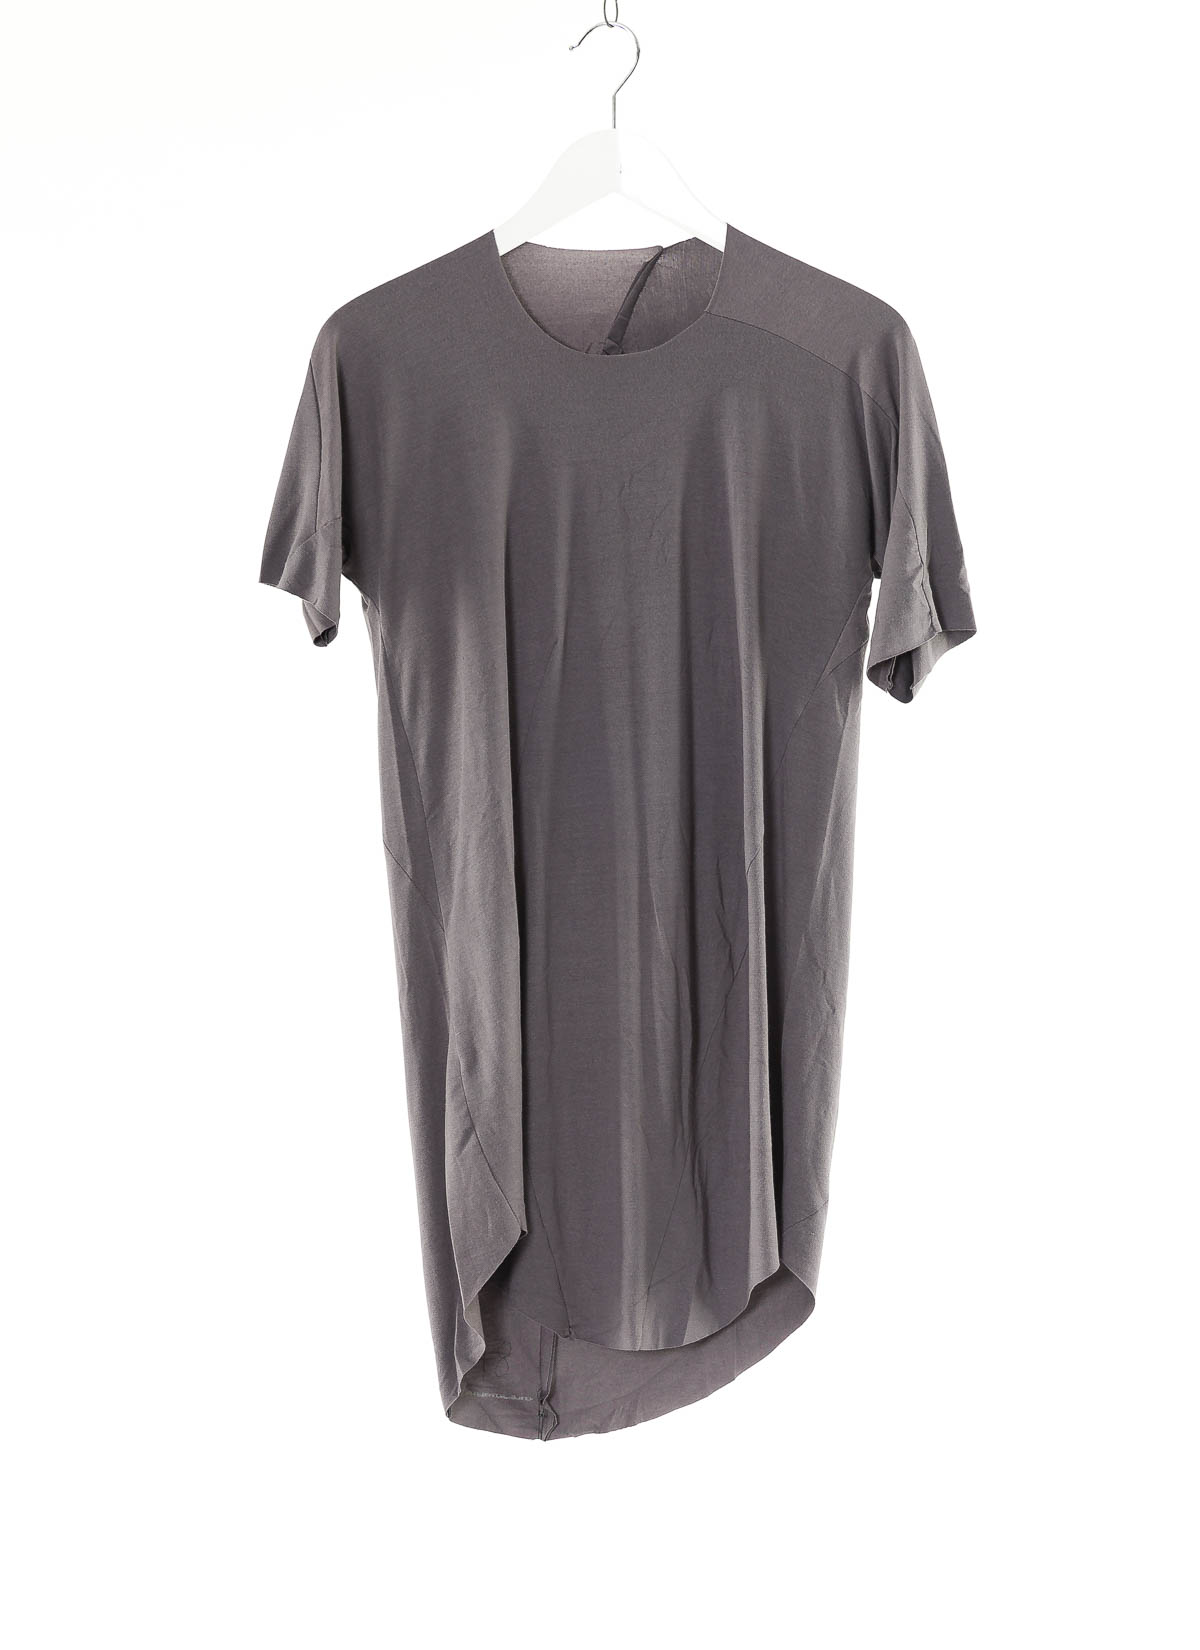 hide-m | LEON EMANUEL BLANCK Distortion Curved T-Shirt, grey